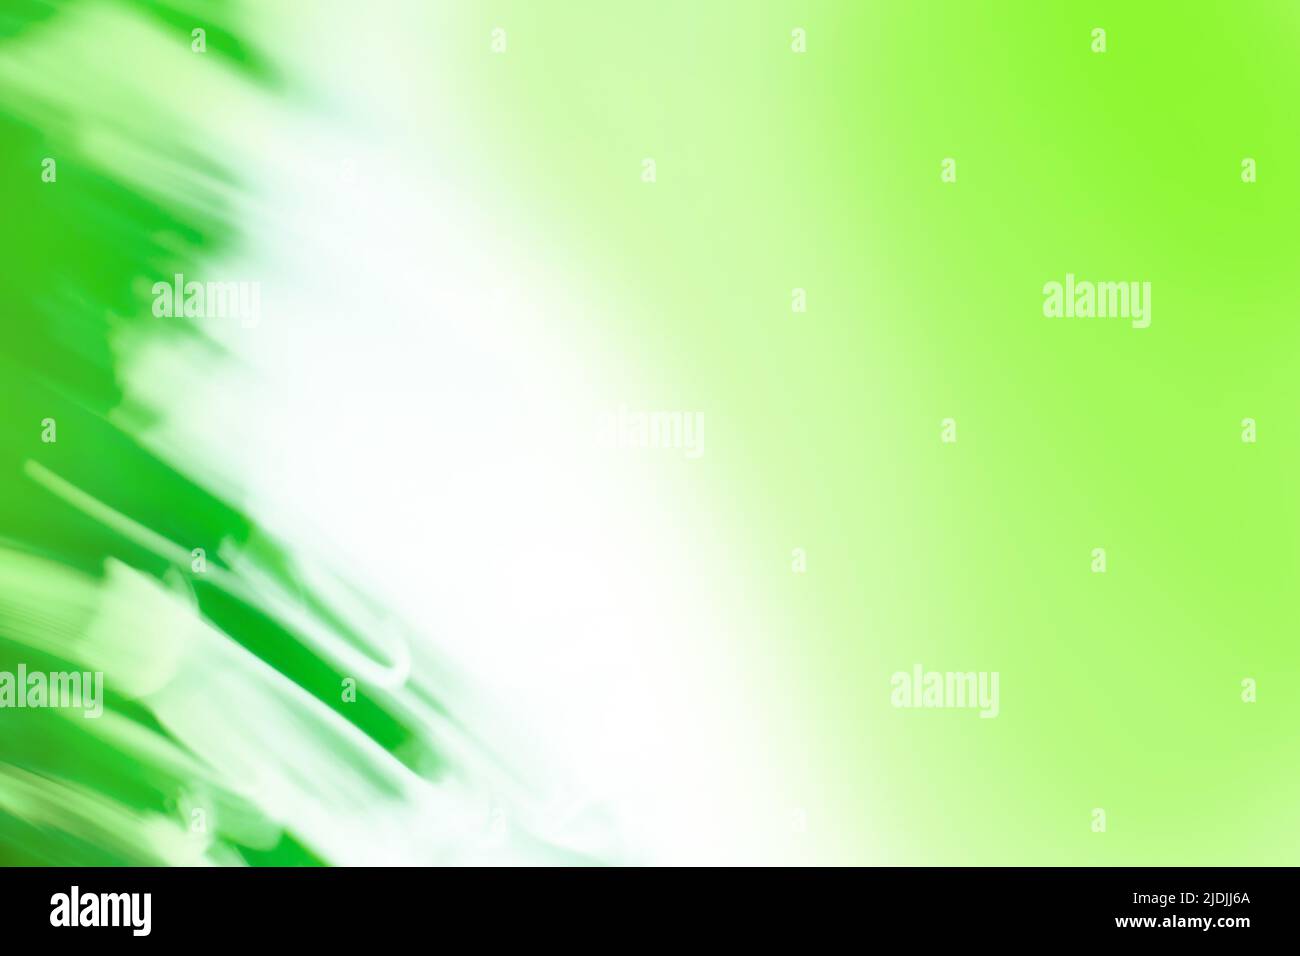 Arrière-plan abstrait en vert agrandi avec des lignes radiantes radiales. Image verte abstraite des traces de zoom léger. Banque D'Images